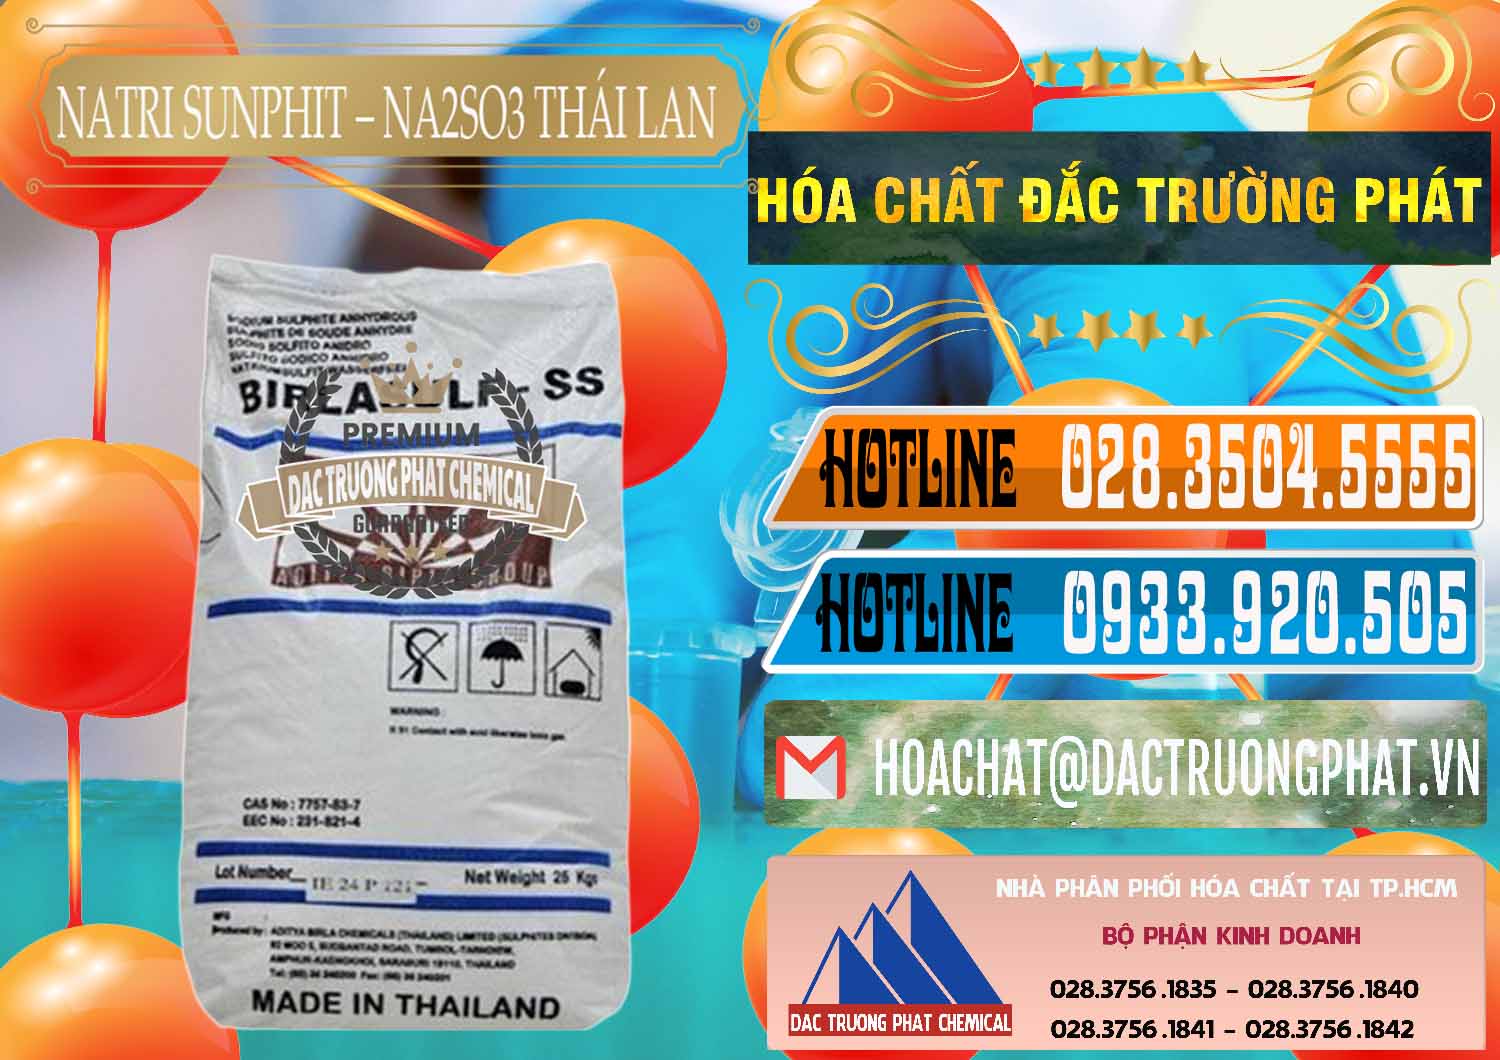 Nơi bán ( cung ứng ) Natri Sunphit - NA2SO3 Thái Lan - 0105 - Công ty chuyên phân phối _ cung ứng hóa chất tại TP.HCM - stmp.net